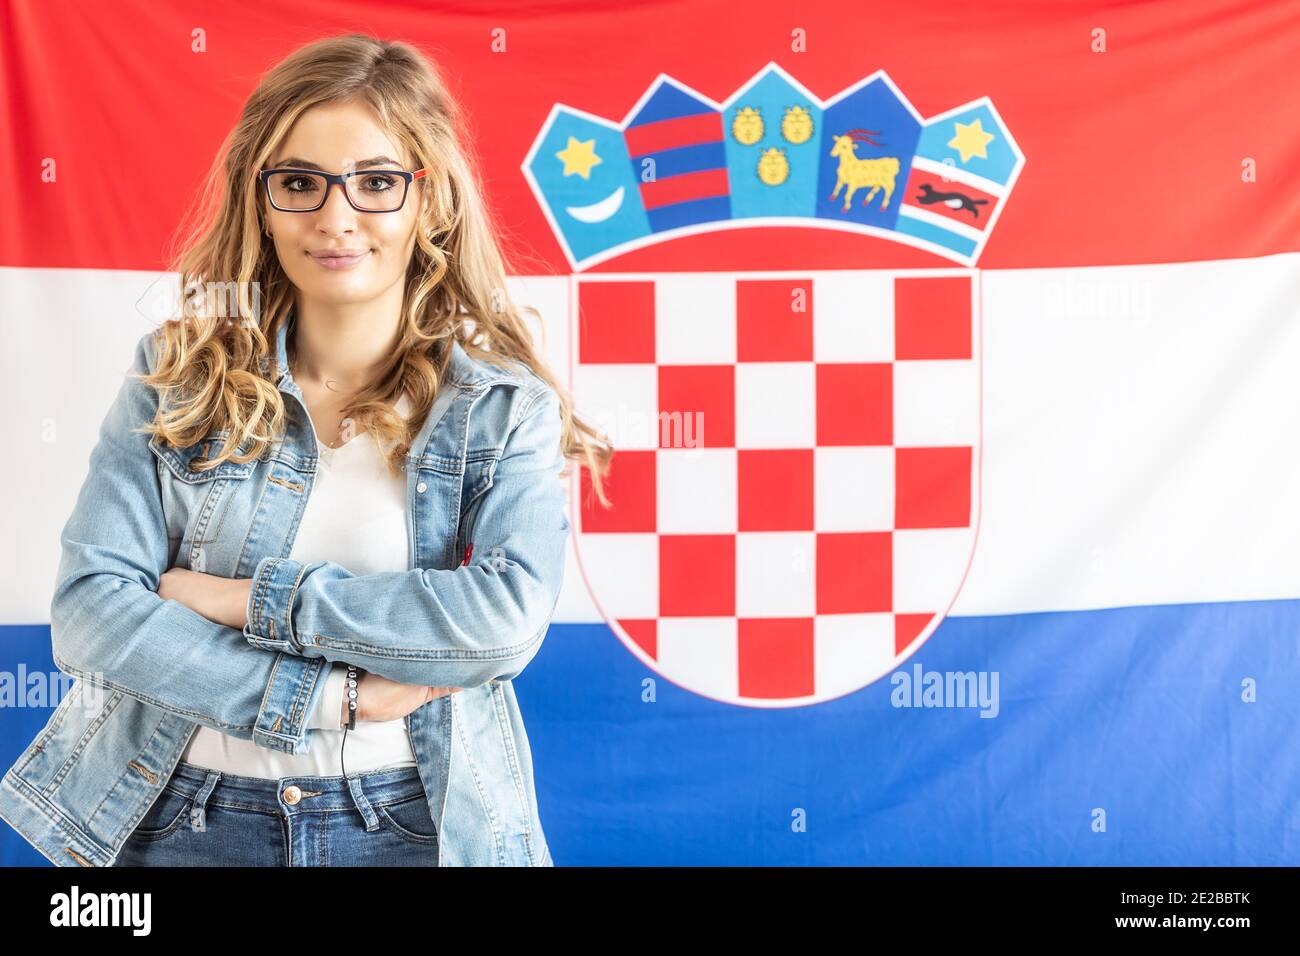 Croatian Teen